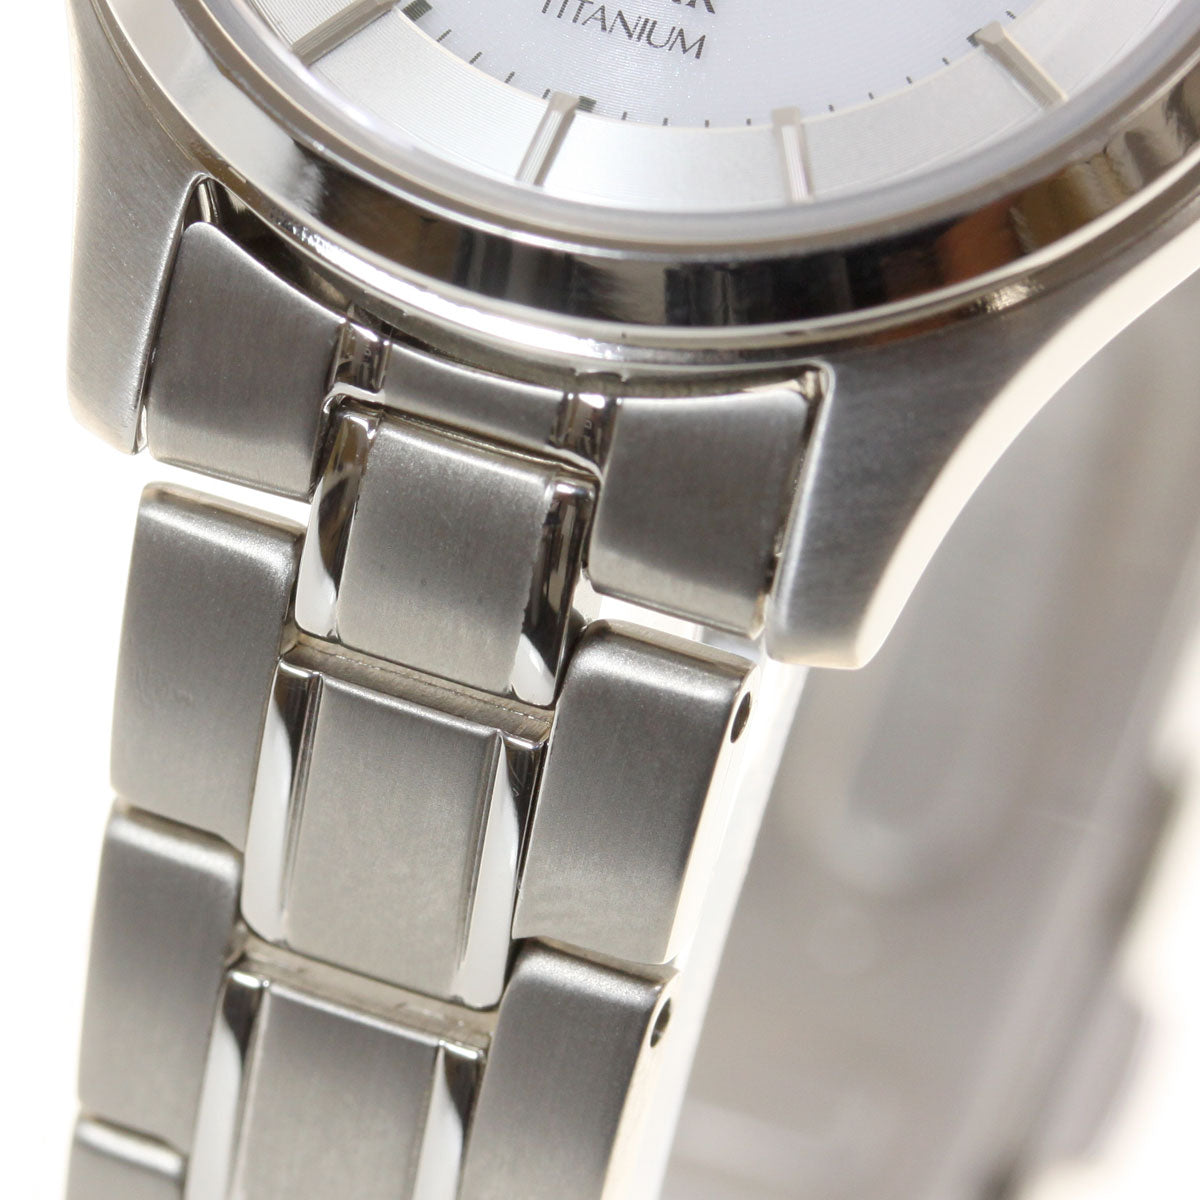 セイコー セレクション SEIKO SELECTION ソーラー 腕時計 ペアモデル レディース STPX041